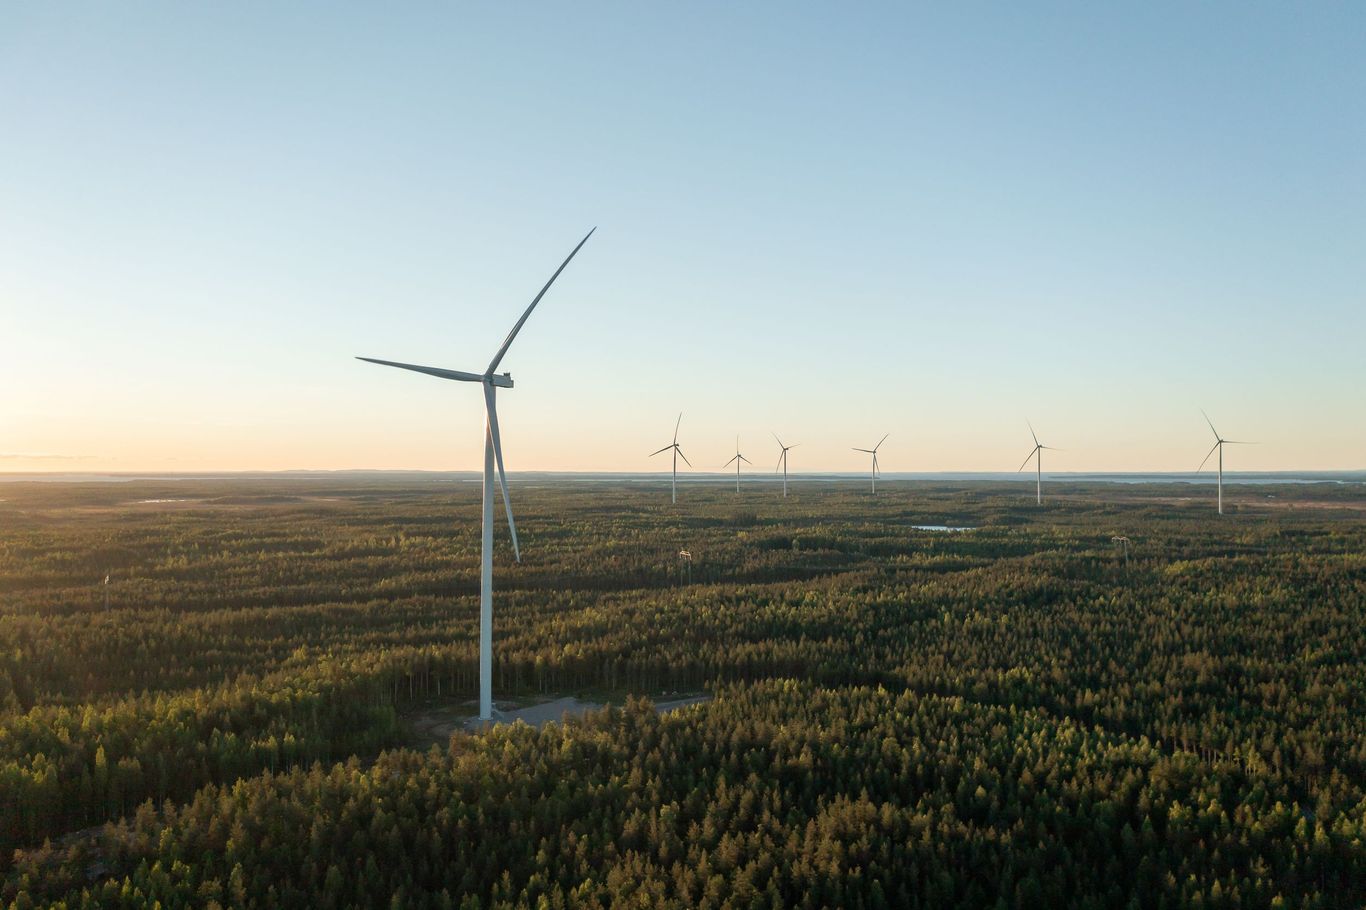 Metsälamminkangas wind farm, 132 MW, Finland (photo: Petteri Löppönen)